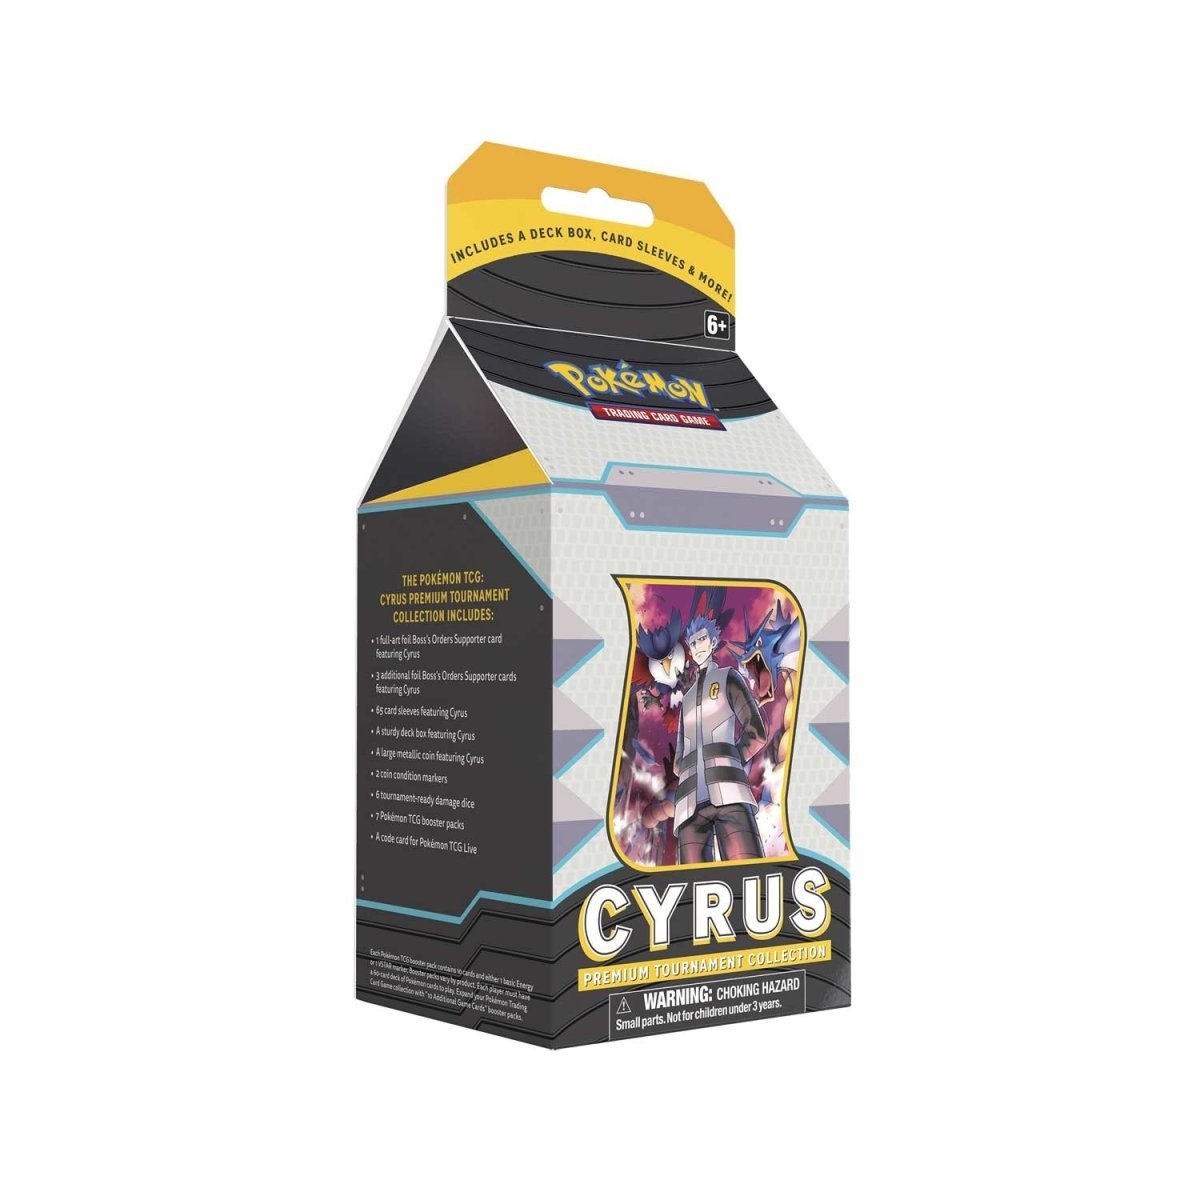 Pokémon TCG: Cyrus Premium Tournament Collection - PokeRvm